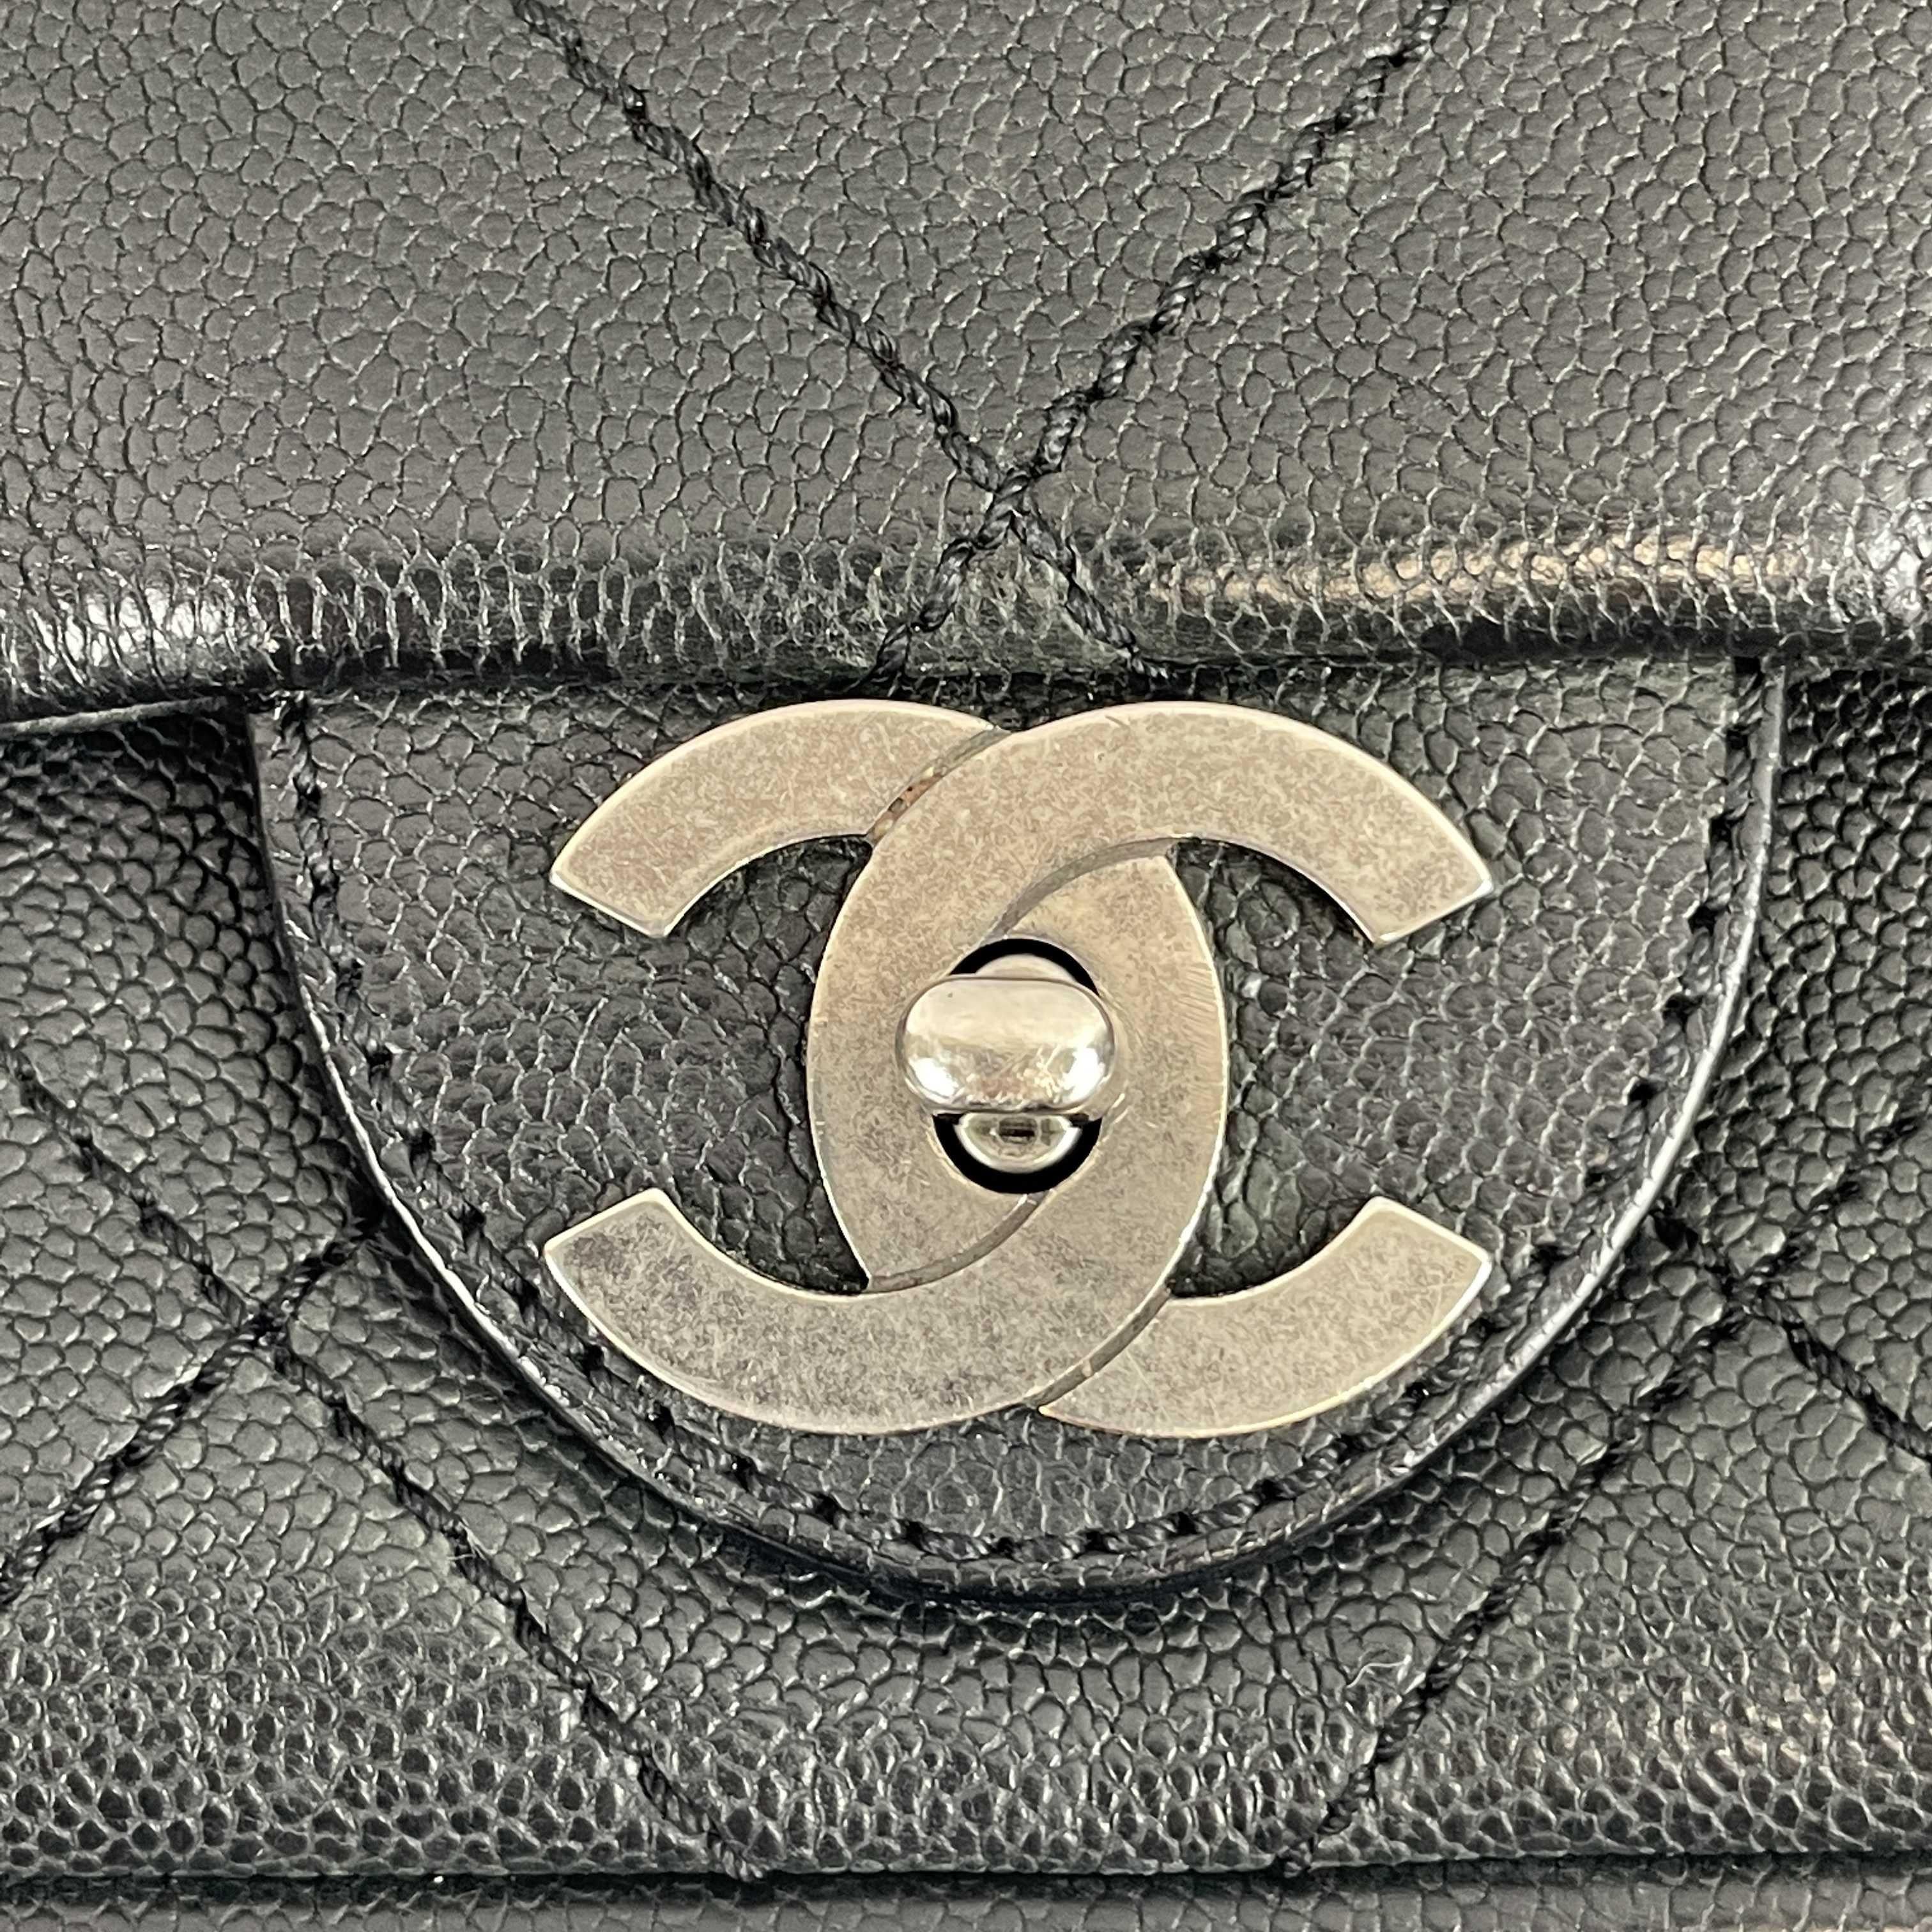 	CHANEL - CC Ligne Flap Large Bag Black / Silver Caviar Leather Shoulder Bag 4